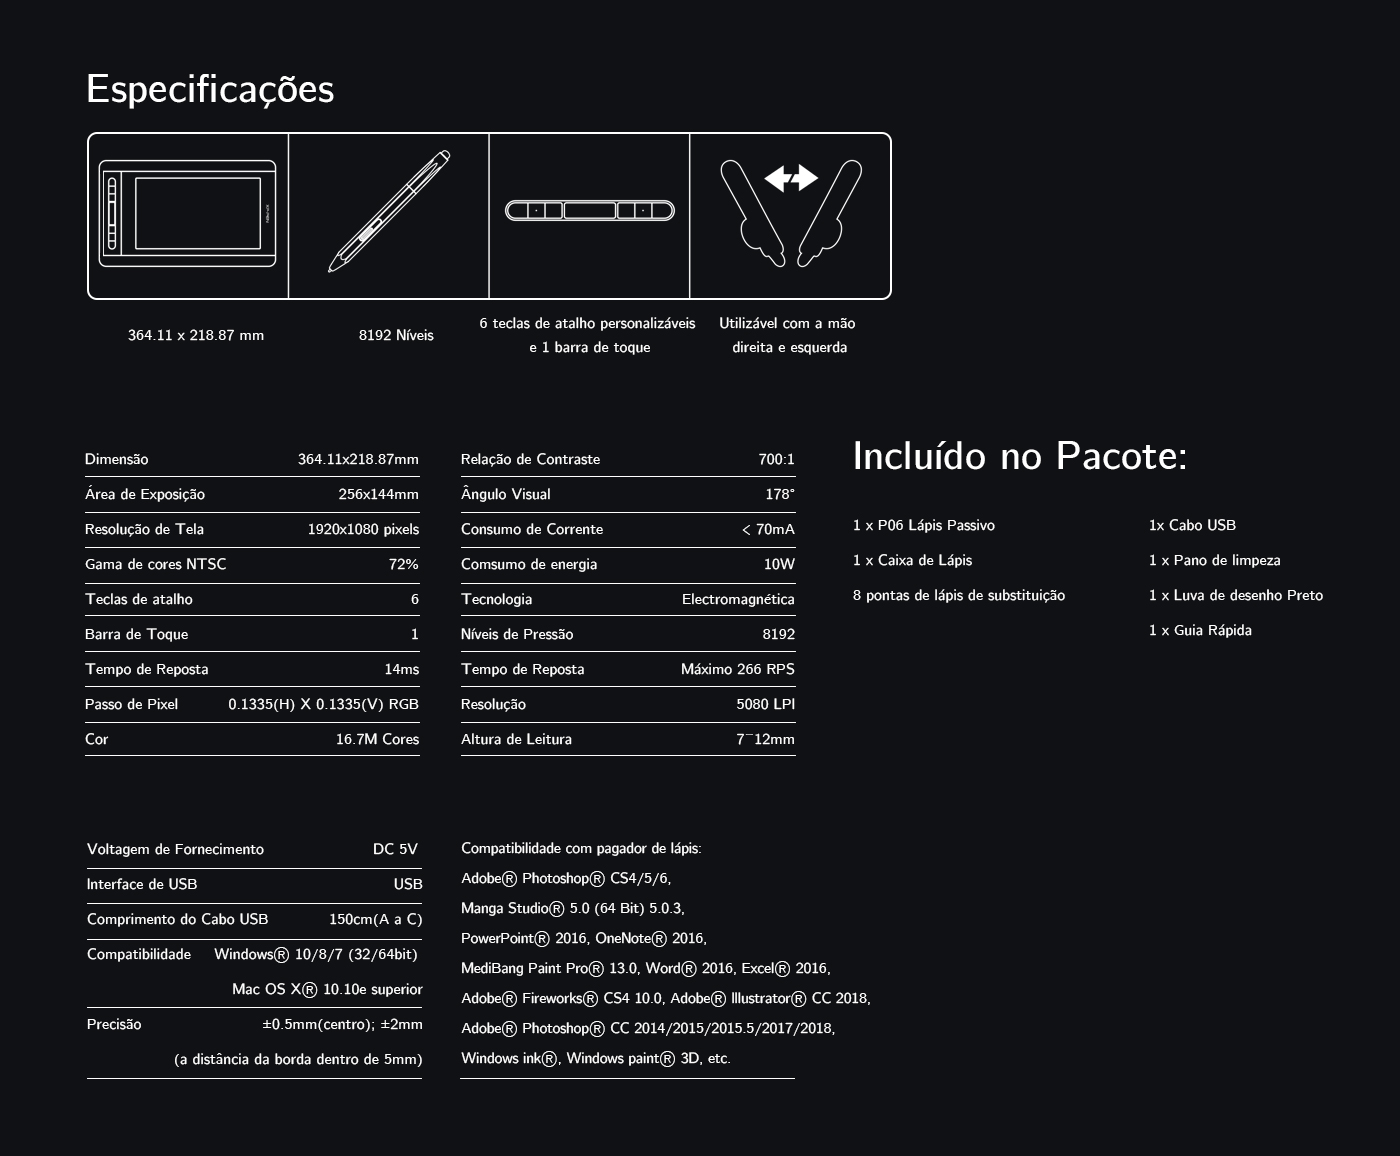  especificações do mesa digitalizadora com tela XP-Pen Artist 12 